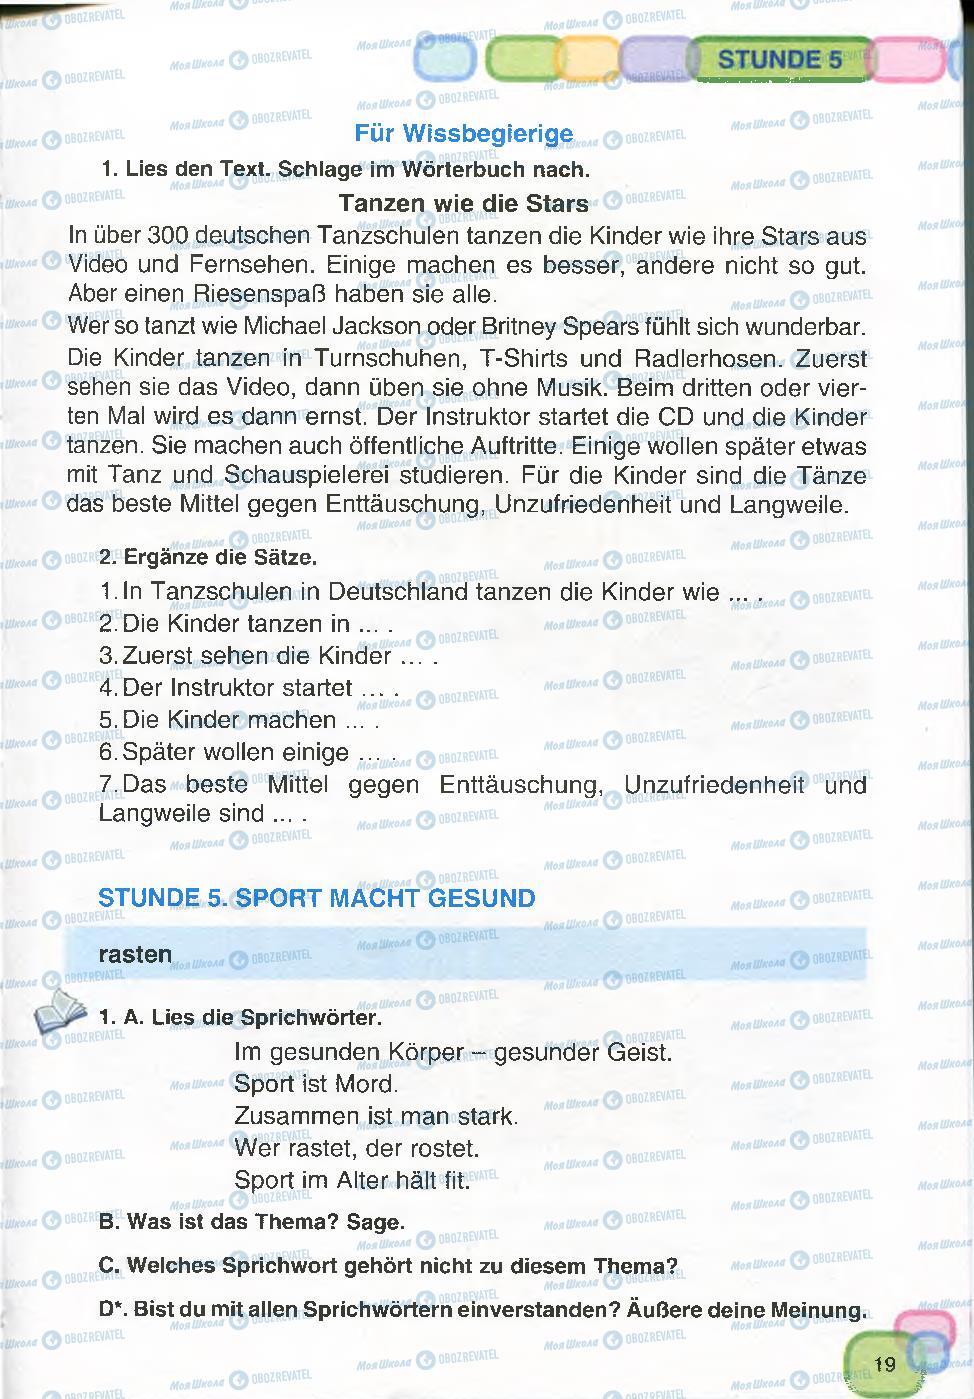 Підручники Німецька мова 7 клас сторінка 19